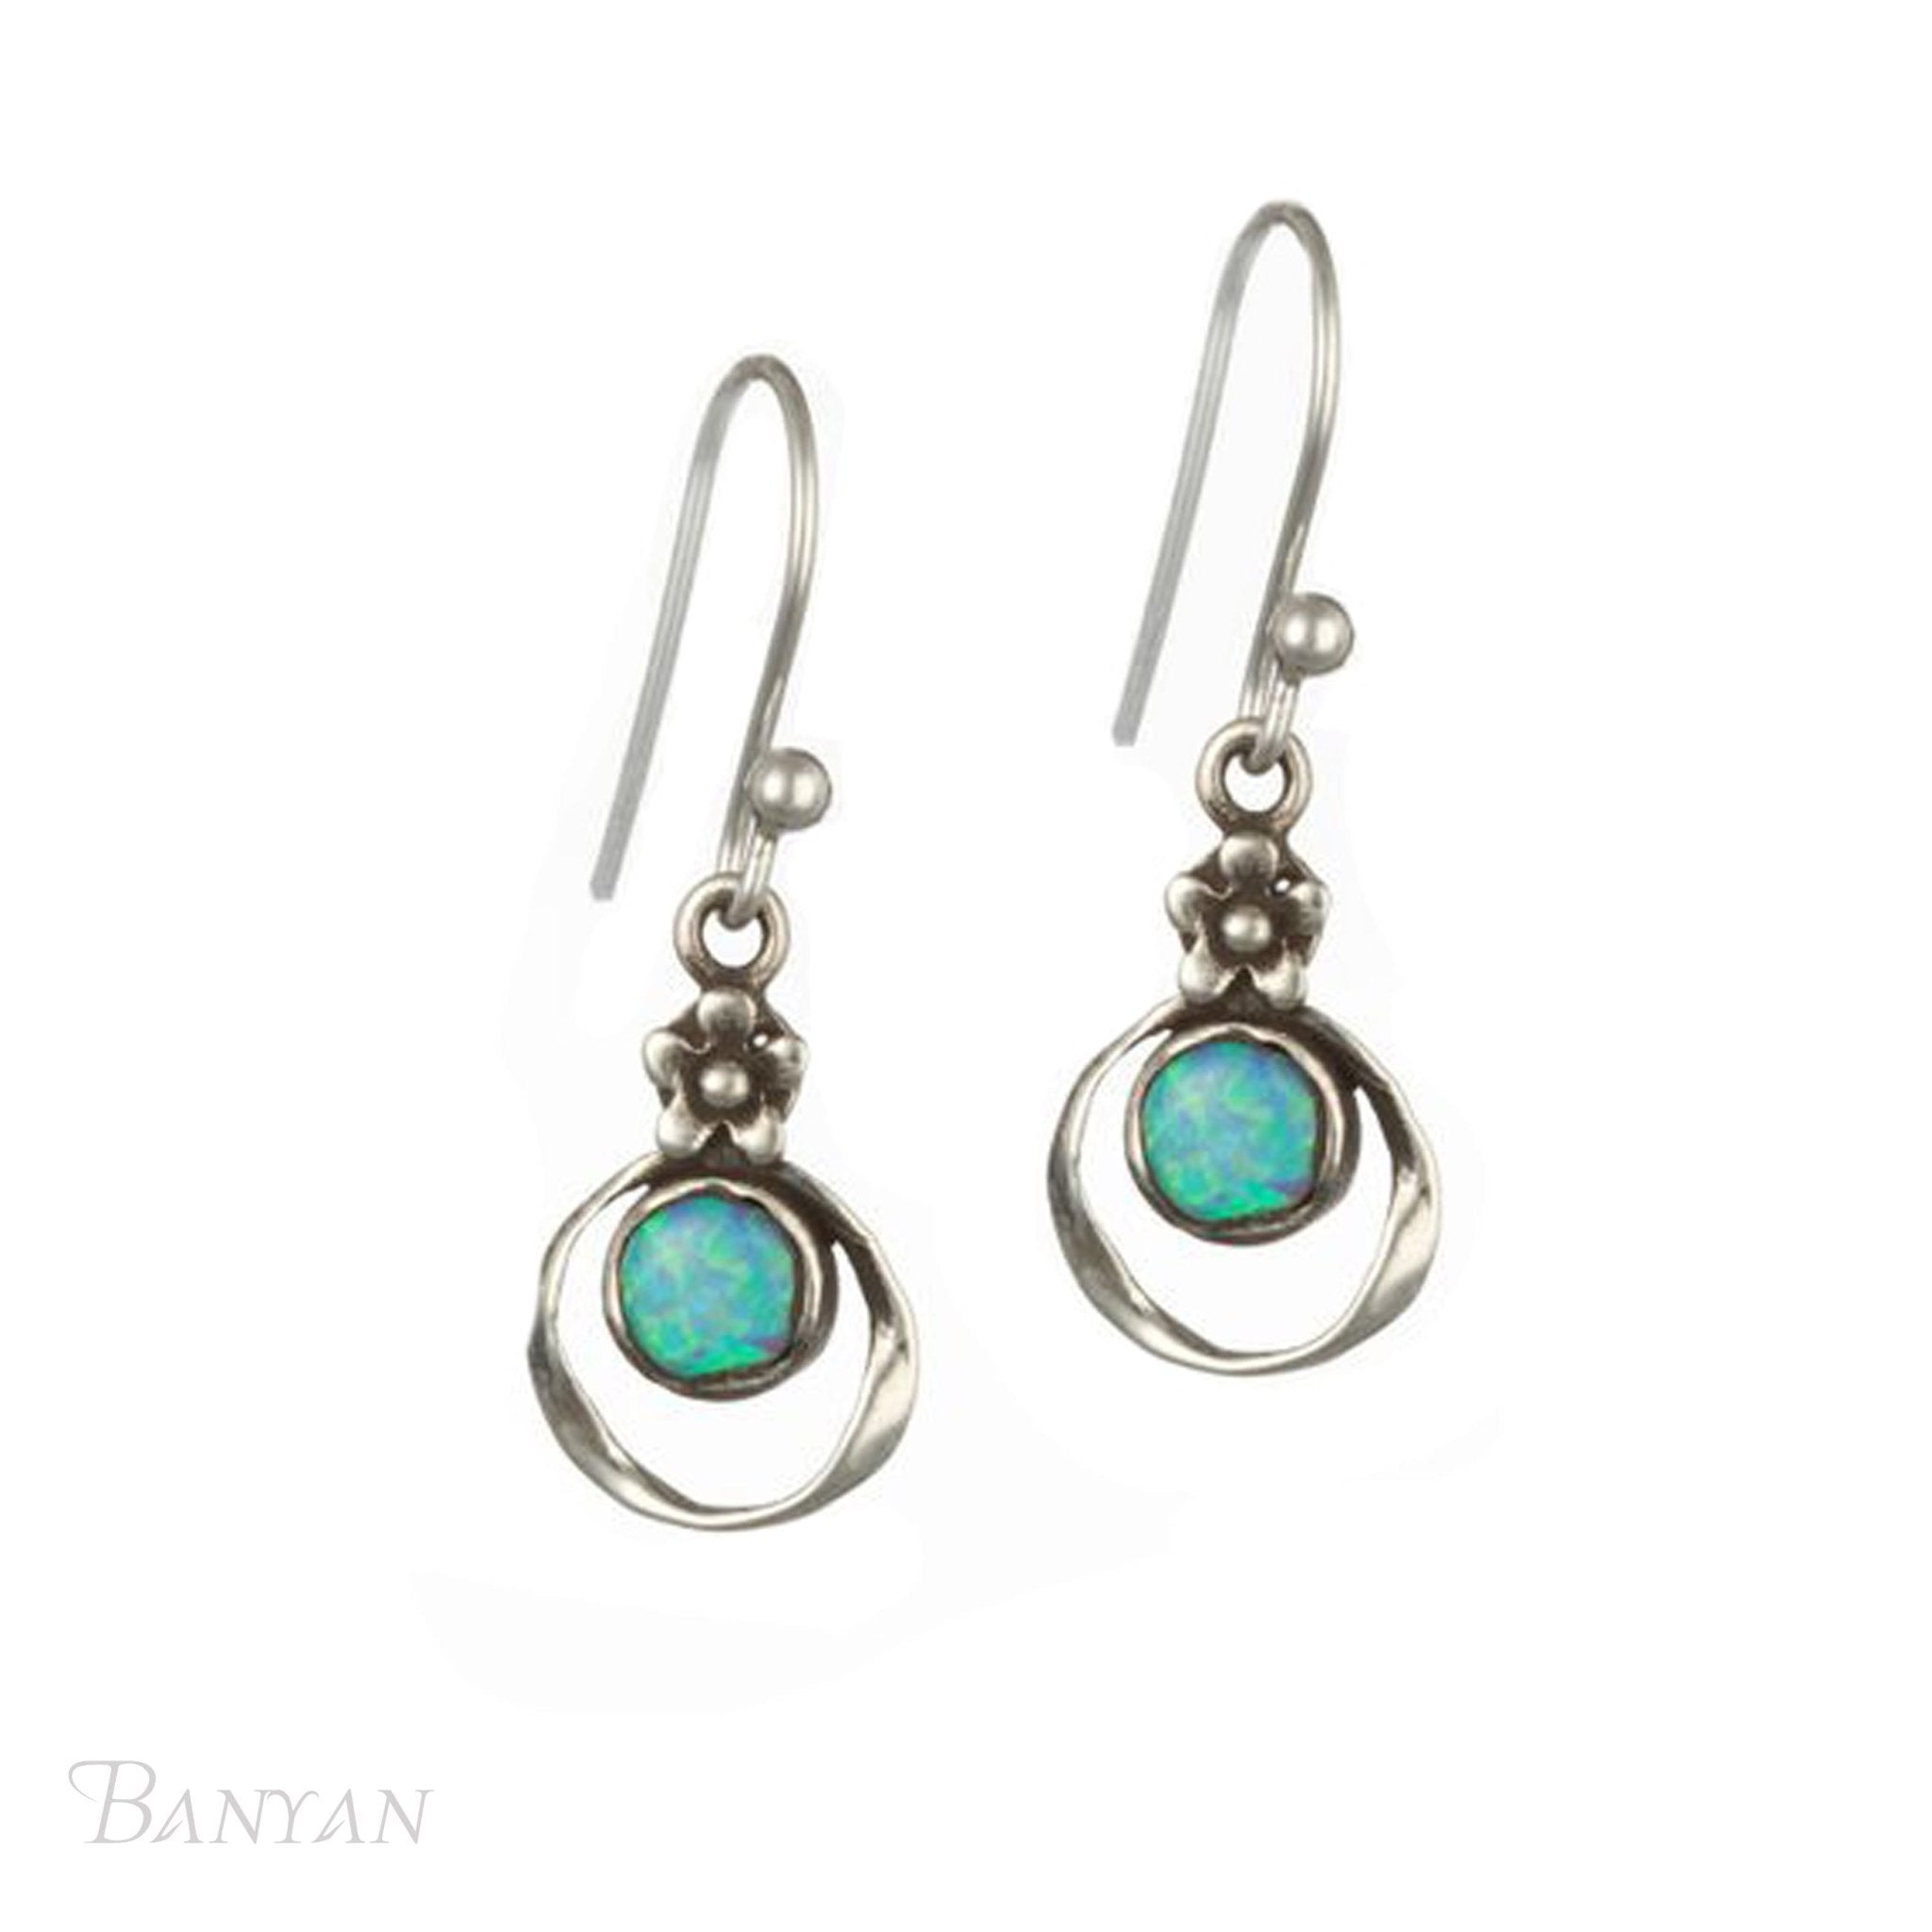 Oxidised Opal Earrings - The Nancy Smillie Shop - Art, Jewellery & Designer Gifts Glasgow